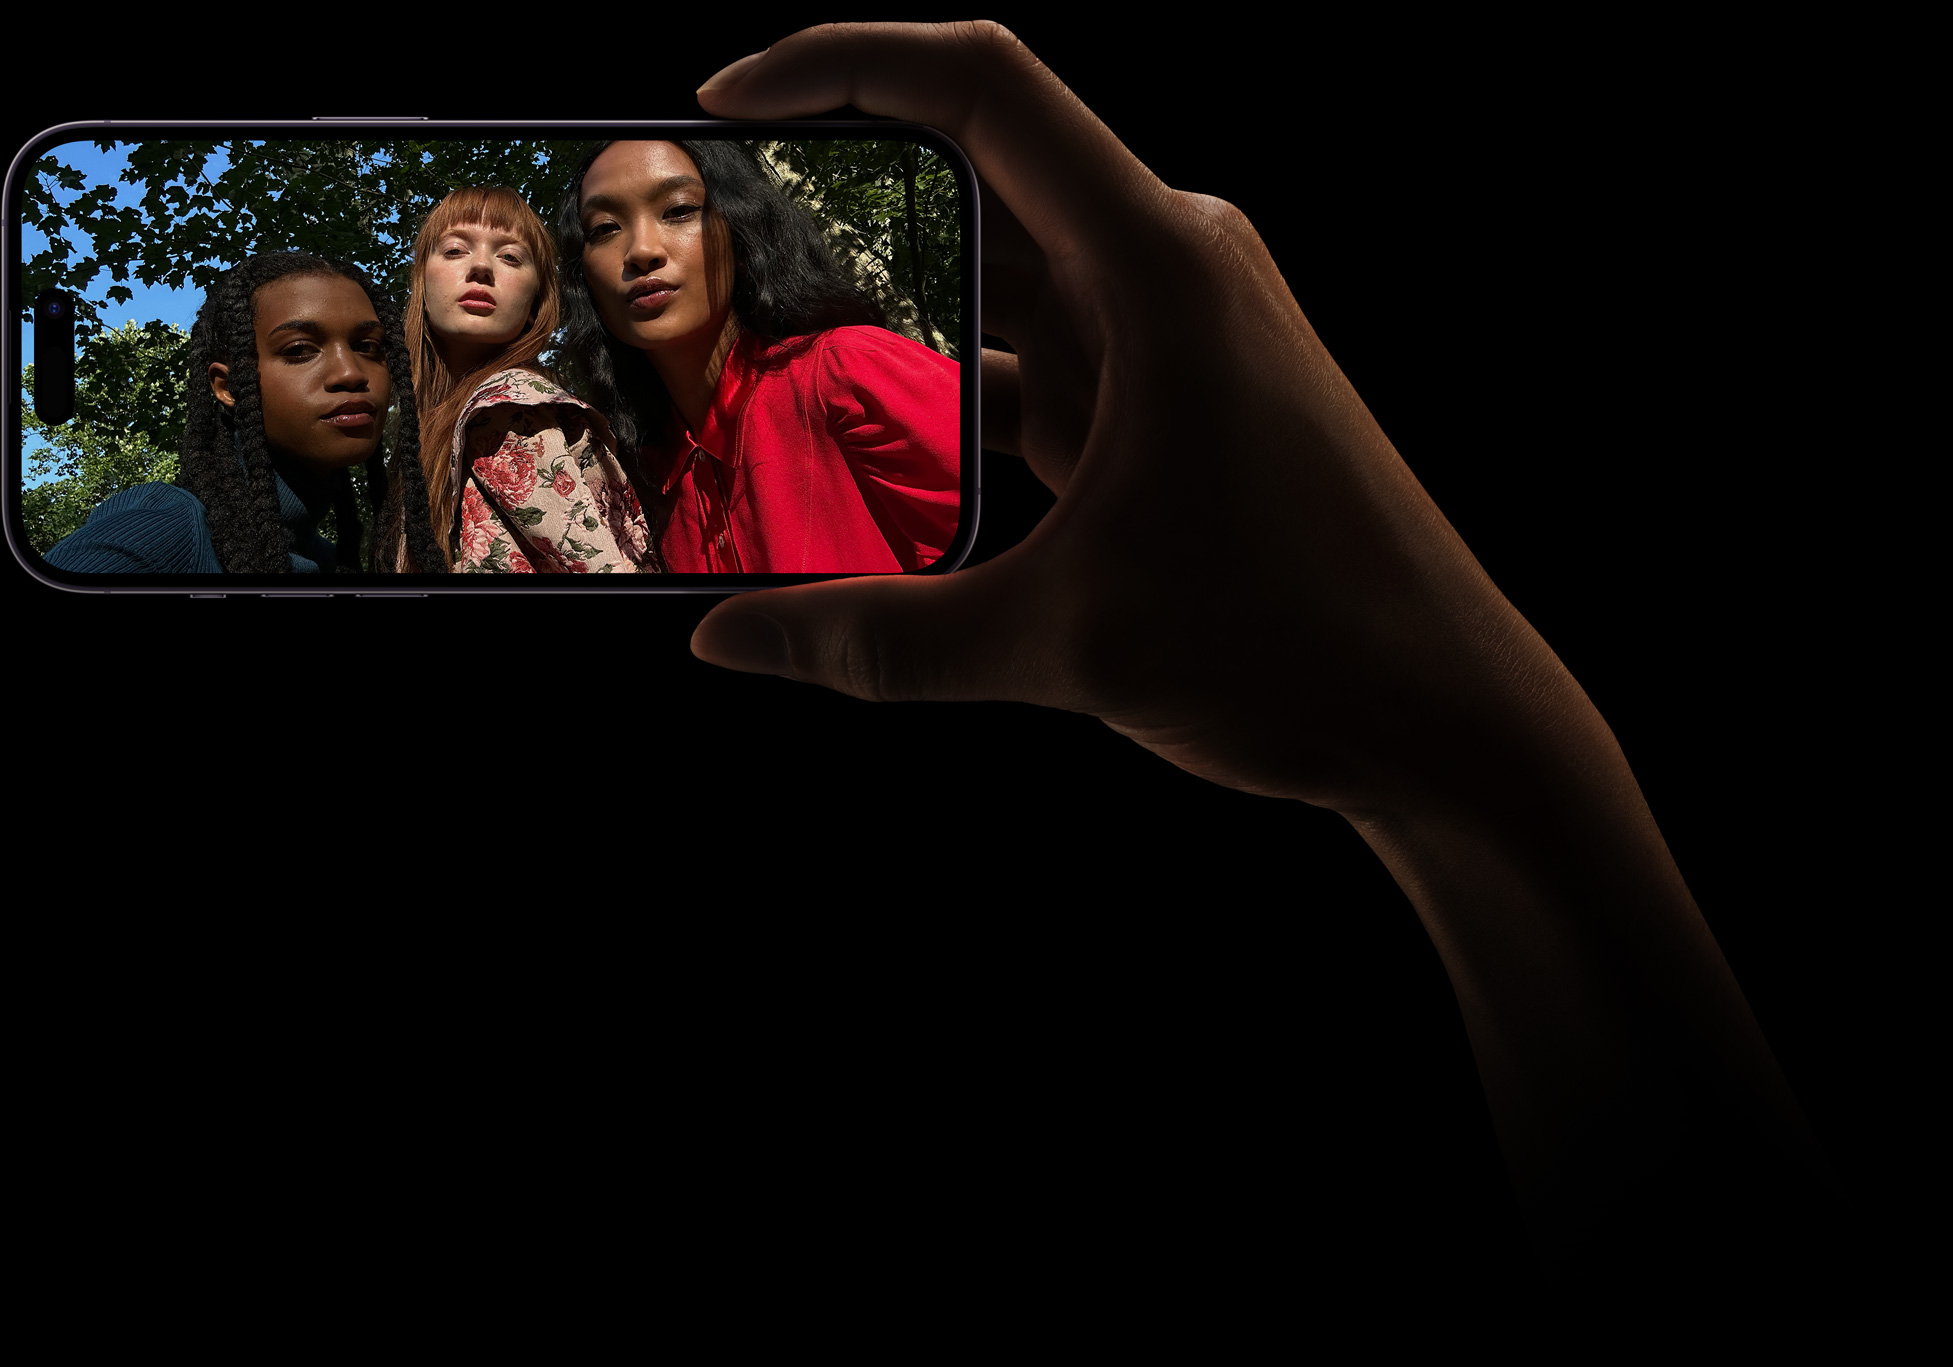 Grupowe selfie trzech kobiet pozujących razem. Zdjęcie zostało zrobione aparatem TrueDepth.